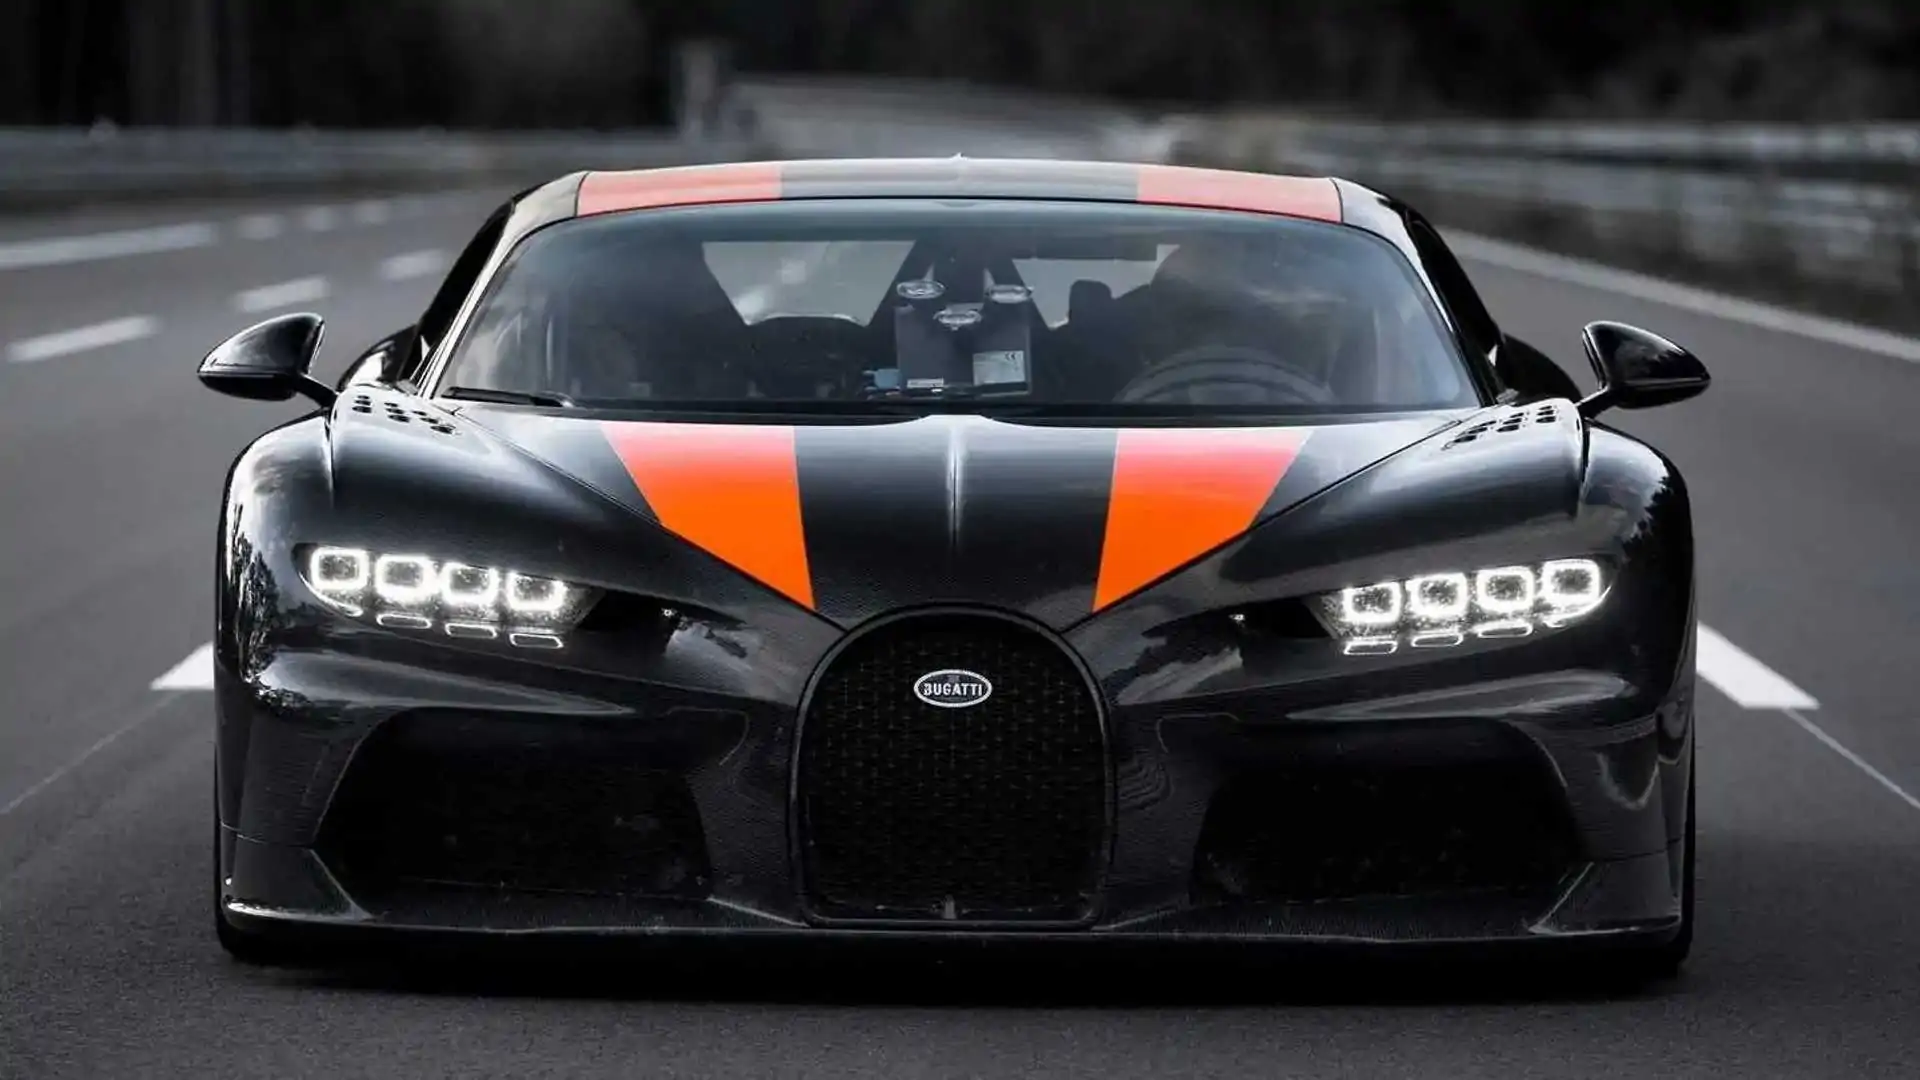 Exclusivo Bugatti Chiron Super Sport que atinge 490 km/h vai estar disponível em leilão: não espere uma pechincha